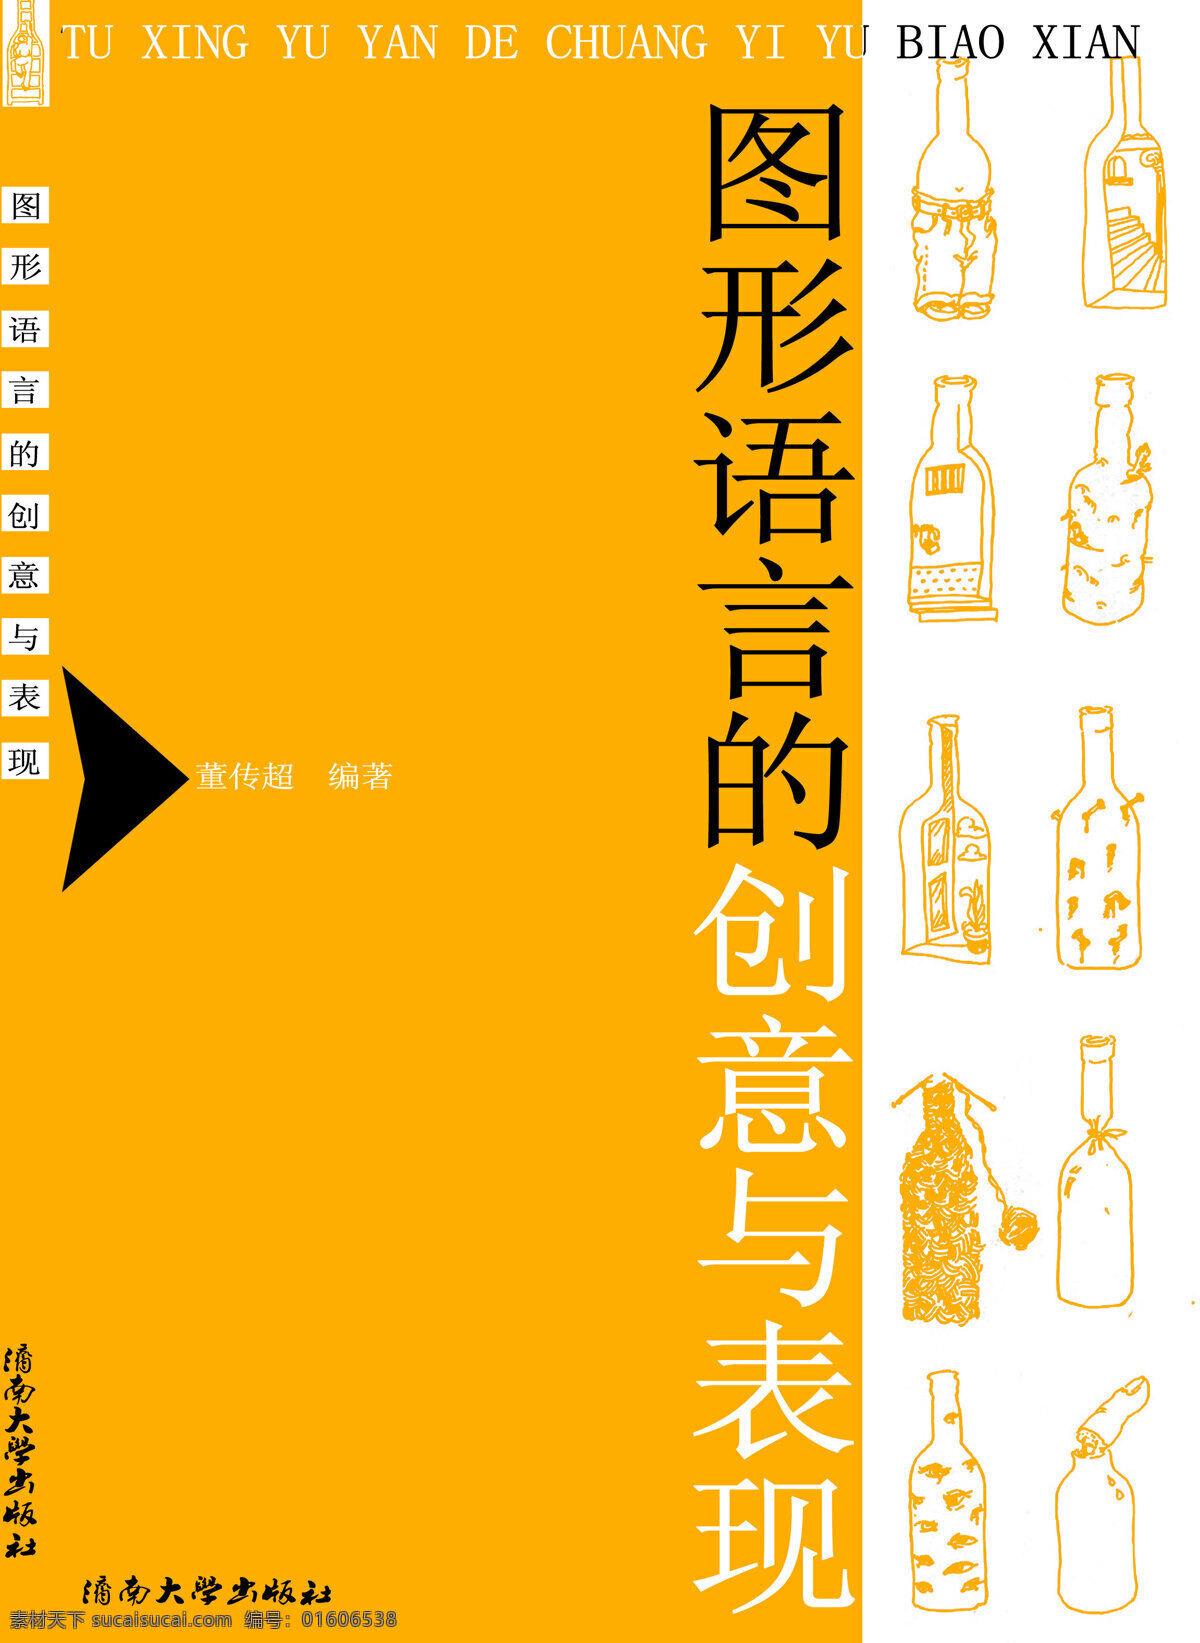 书籍封面 装帧设计 设计素材 封面设计 书籍装帧 平面设计 黄色